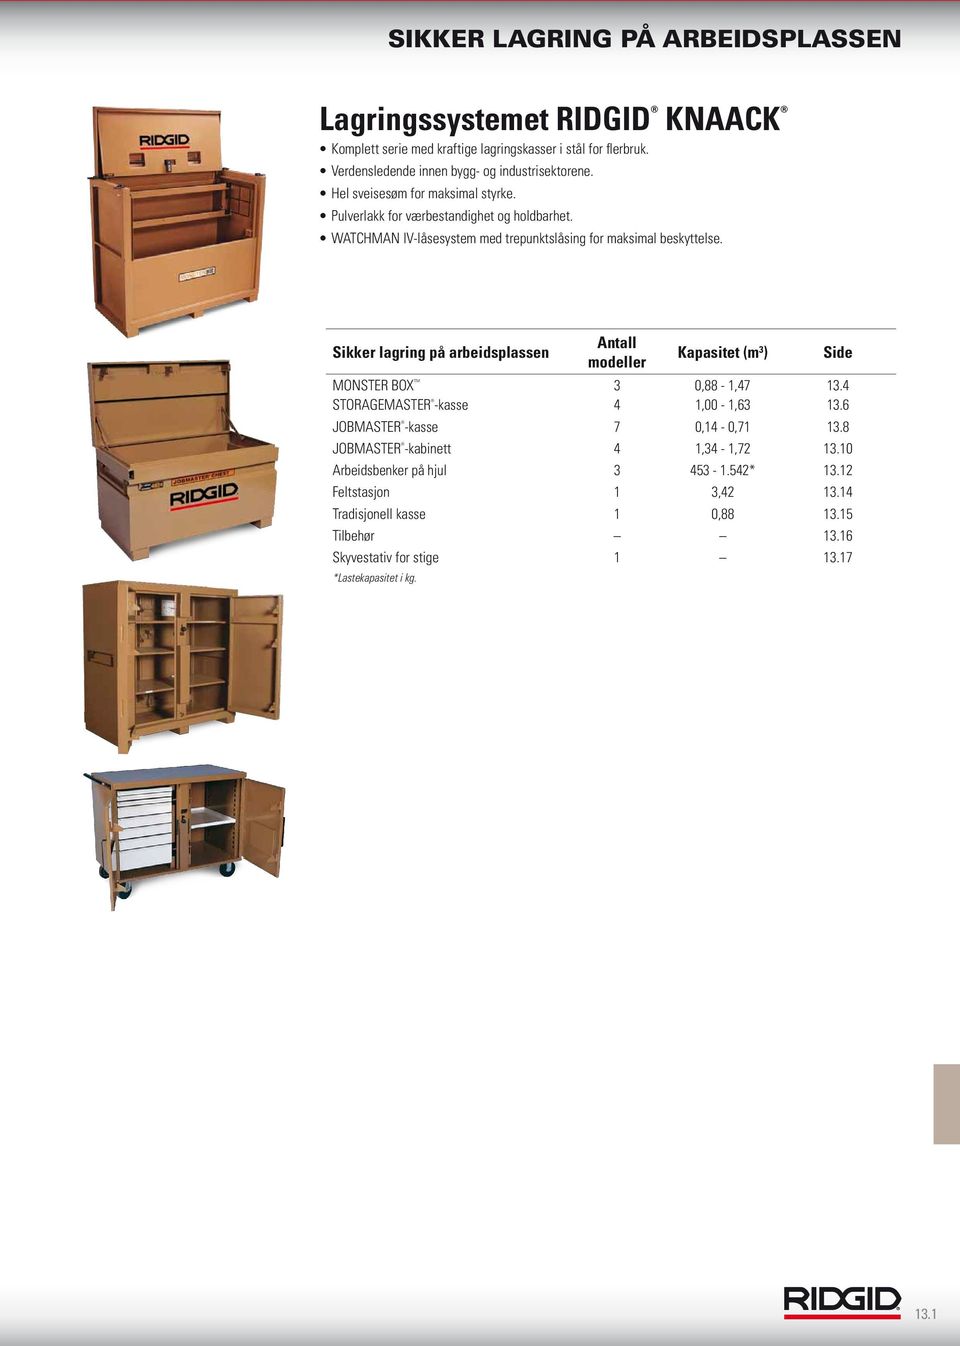 Sikker lagring på arbeidsplassen Antall modeller Kapasitet (m 3 ) Side MONSTER BOX 3 0,88-1,47 13.4 STORAGEMASTER -kasse 4 1,00-1,63 13.